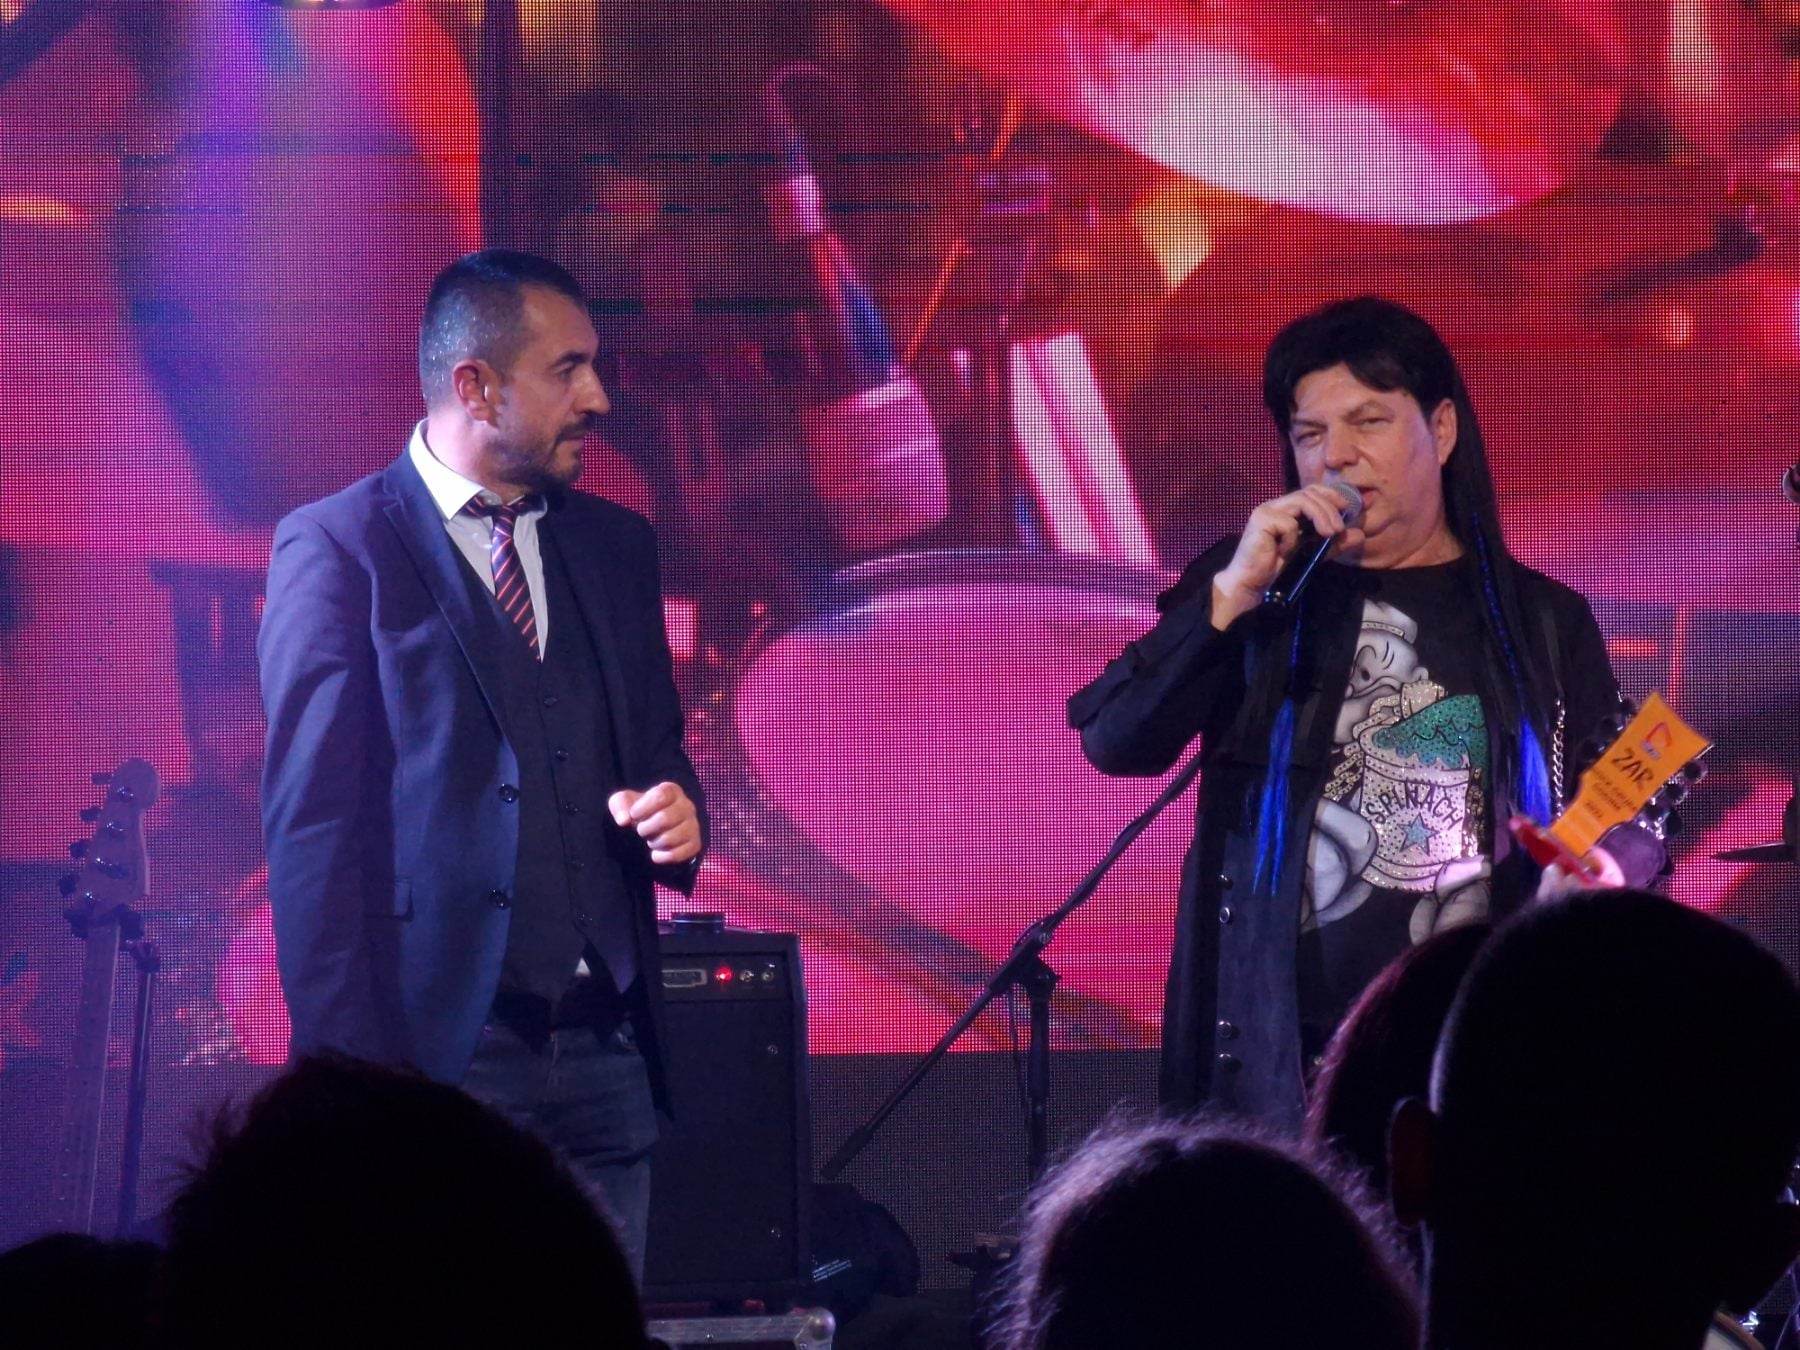 ZAR dobio priznanje za rock grupu godine, u novogodišnjoj noći održat će koncert u Tešnju